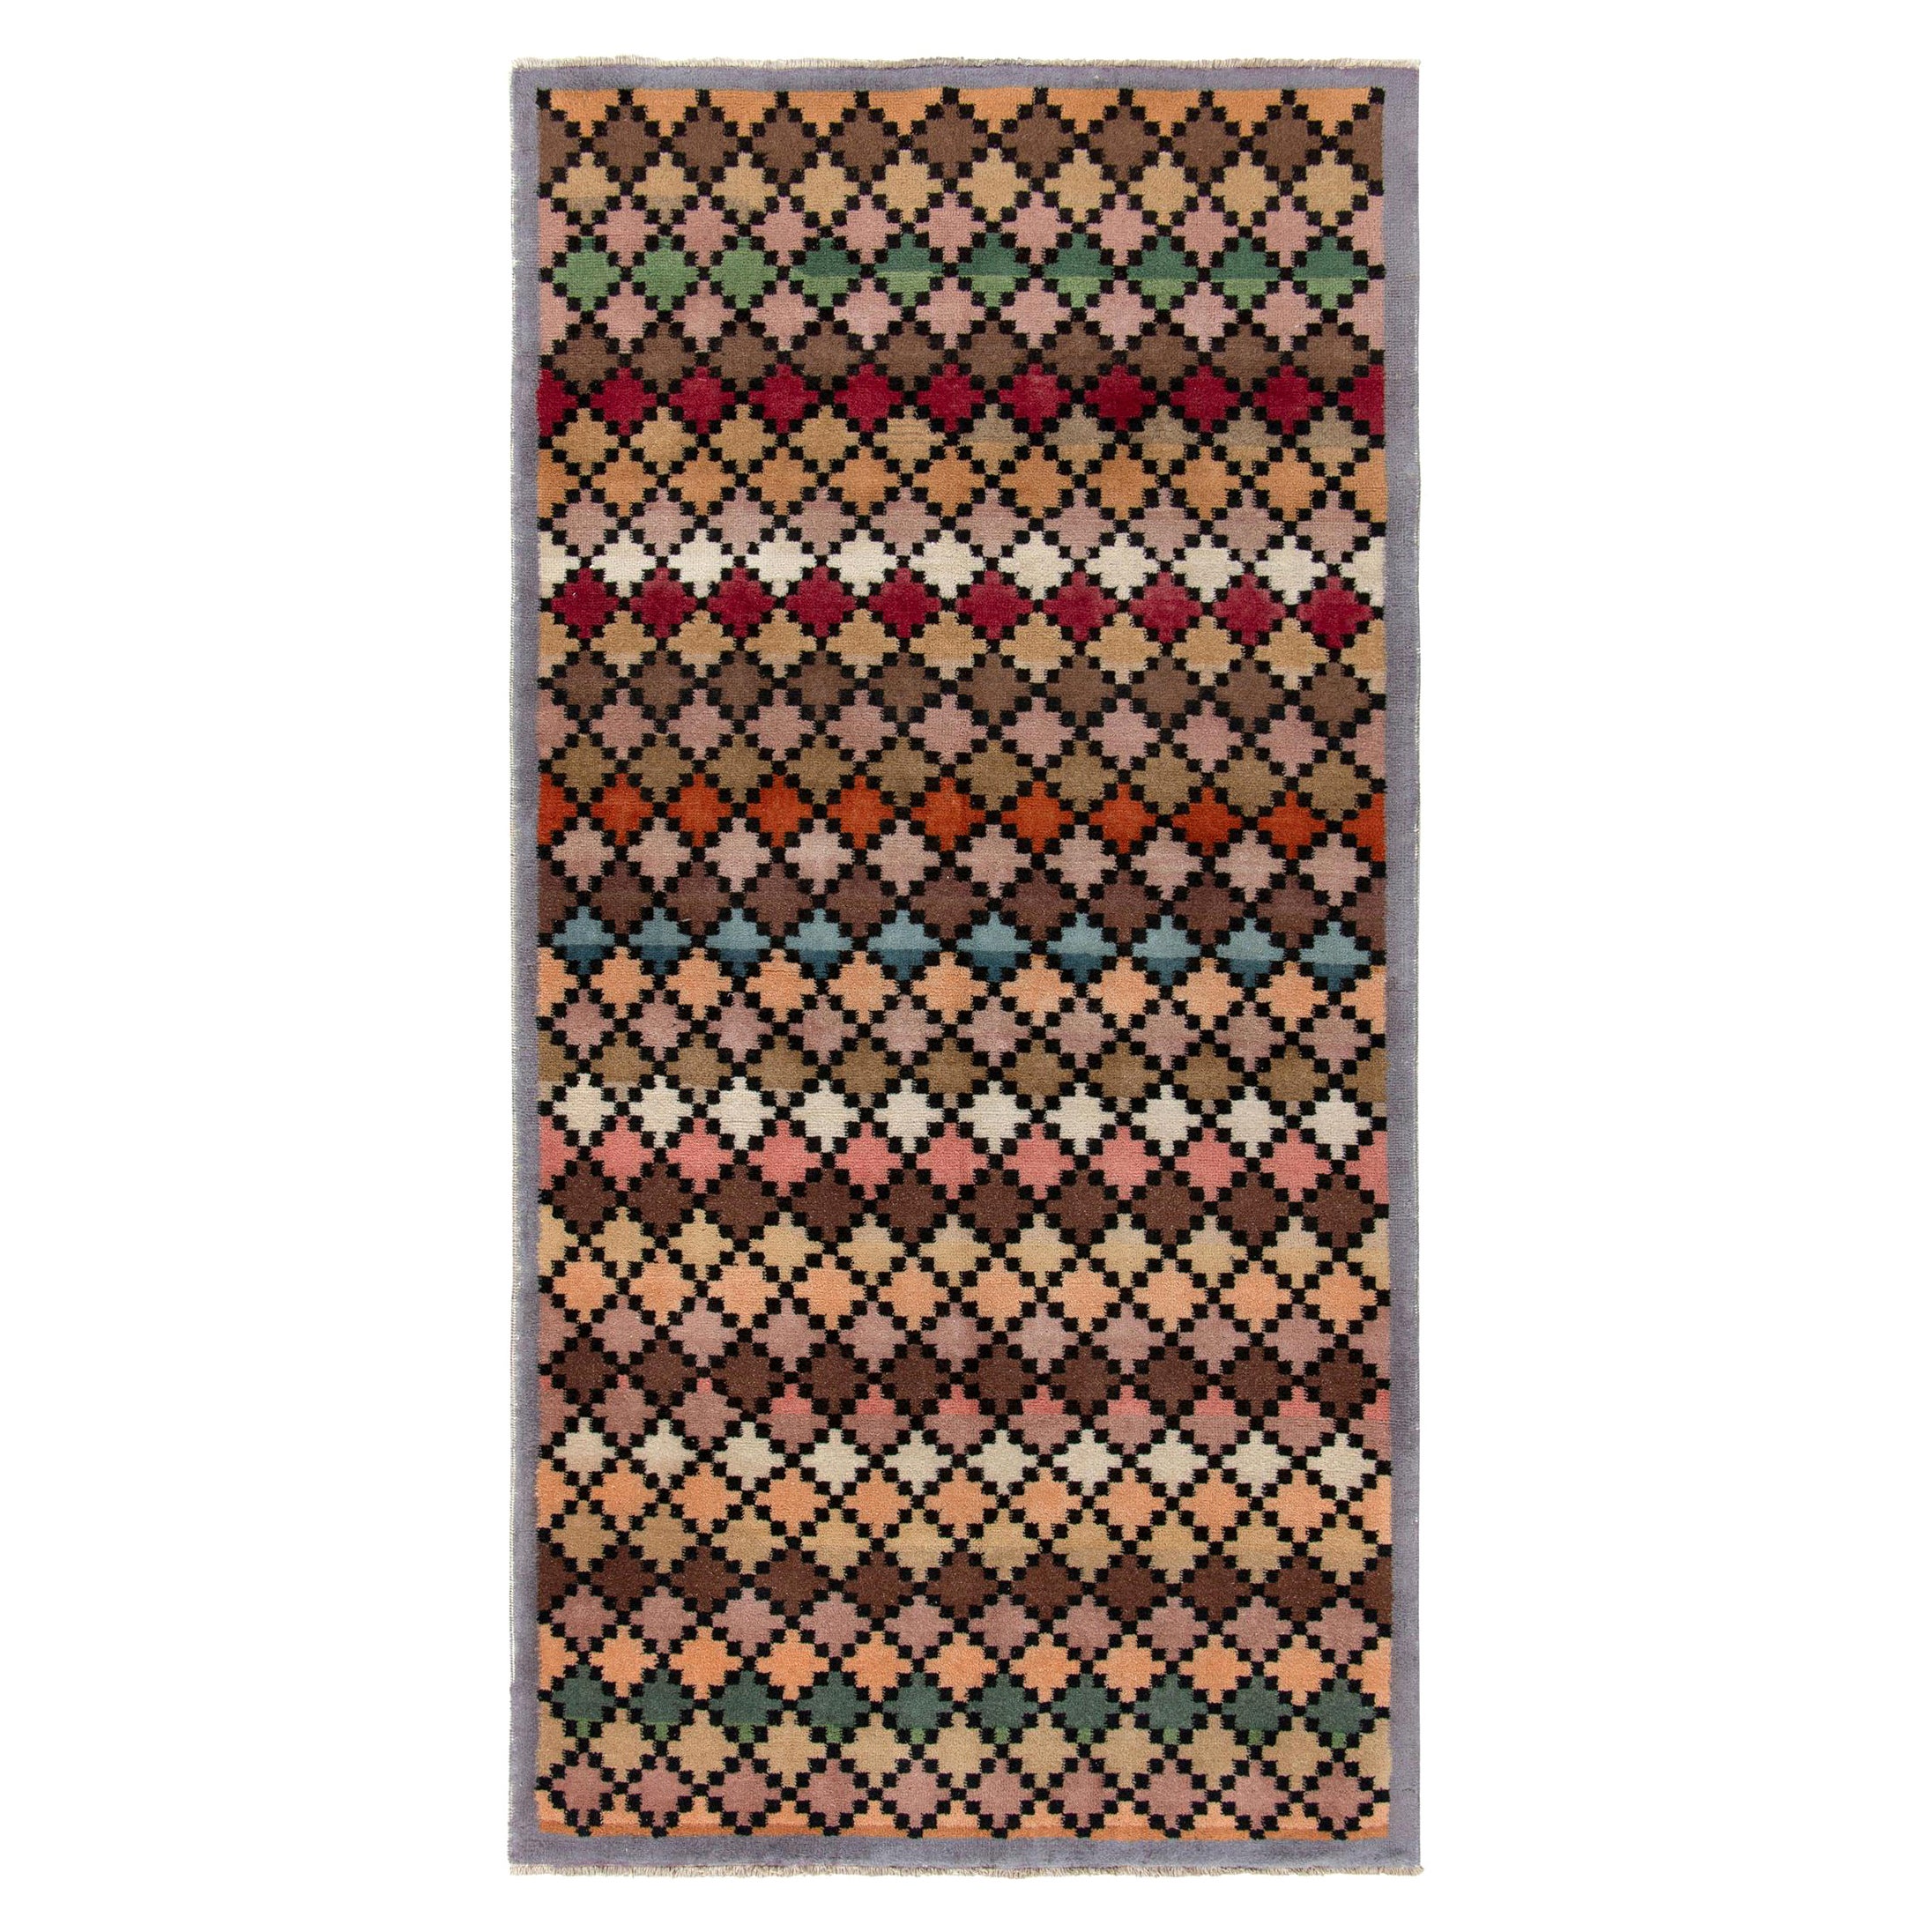 1960er Jahre Vintage Deko-Teppich in mehrfarbigem, geometrischem Muster von Teppich & Kelim